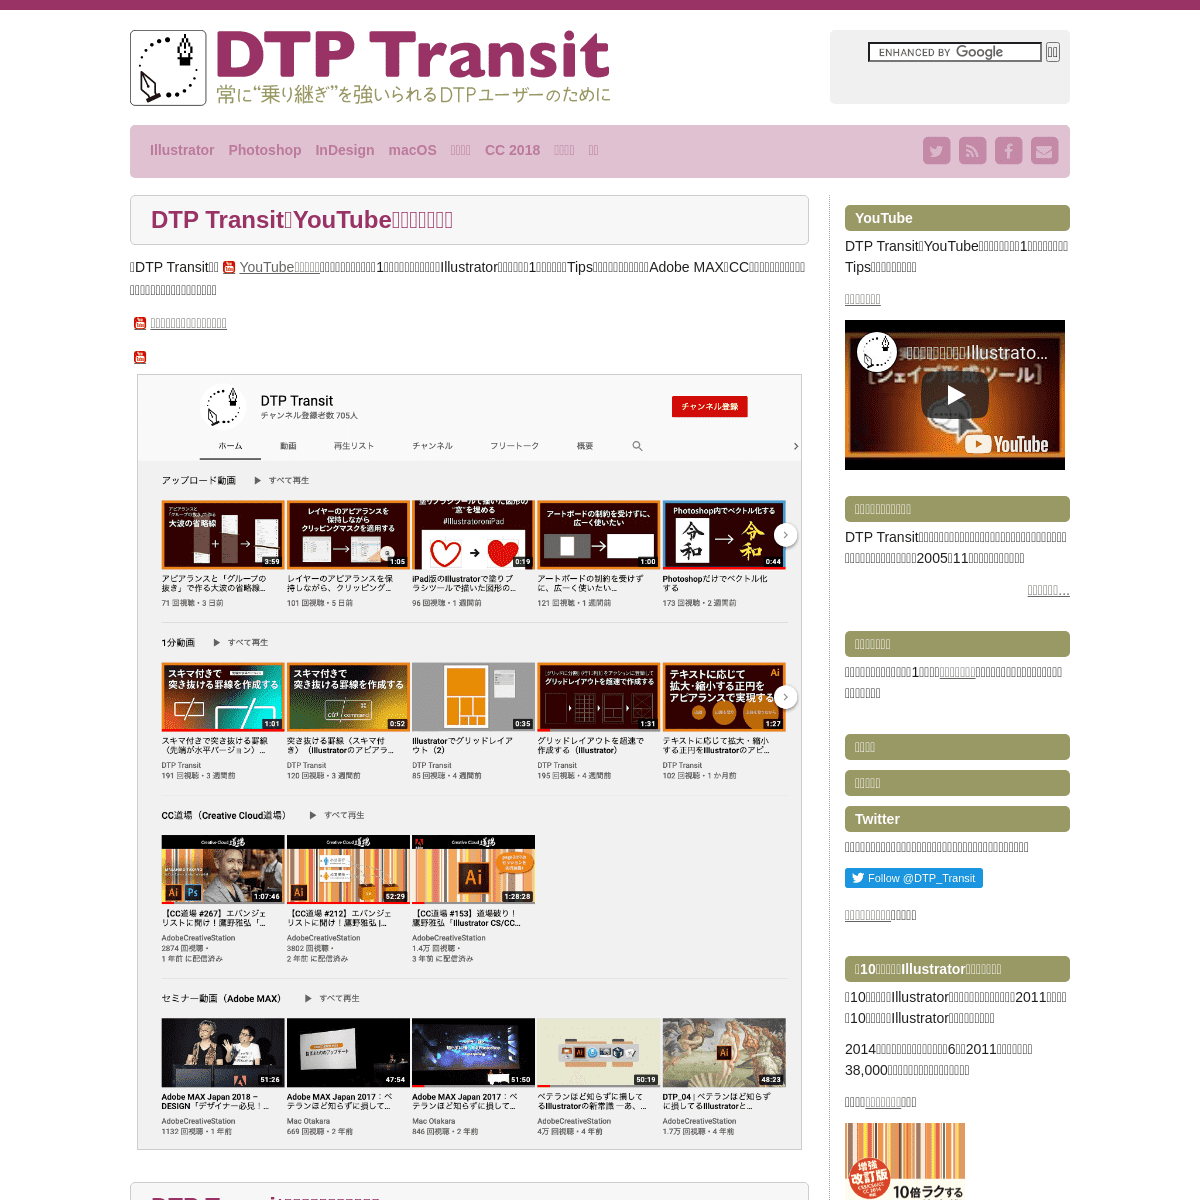 A complete backup of https://dtp-transit.jp